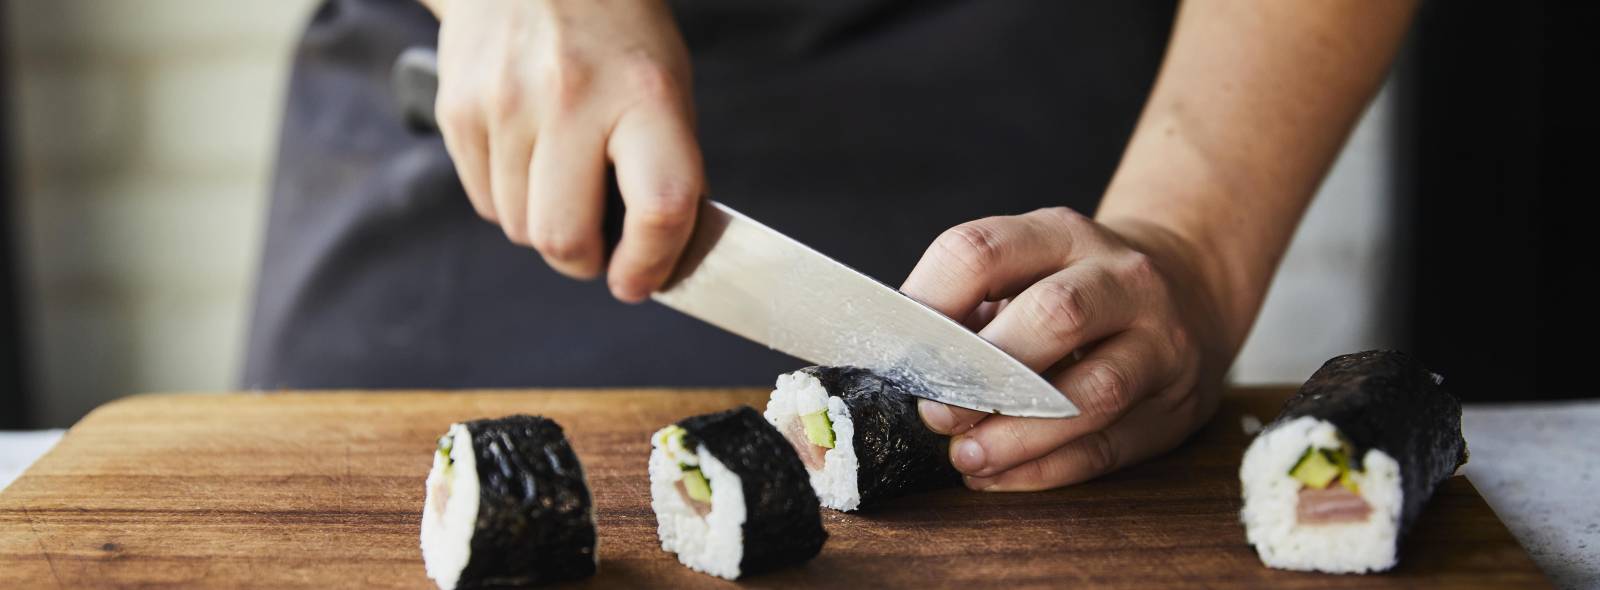 vb1952877 GRA Sushi masterclass Slicing maki sushi rice seaweed 030821 9 wozwcz 3 min